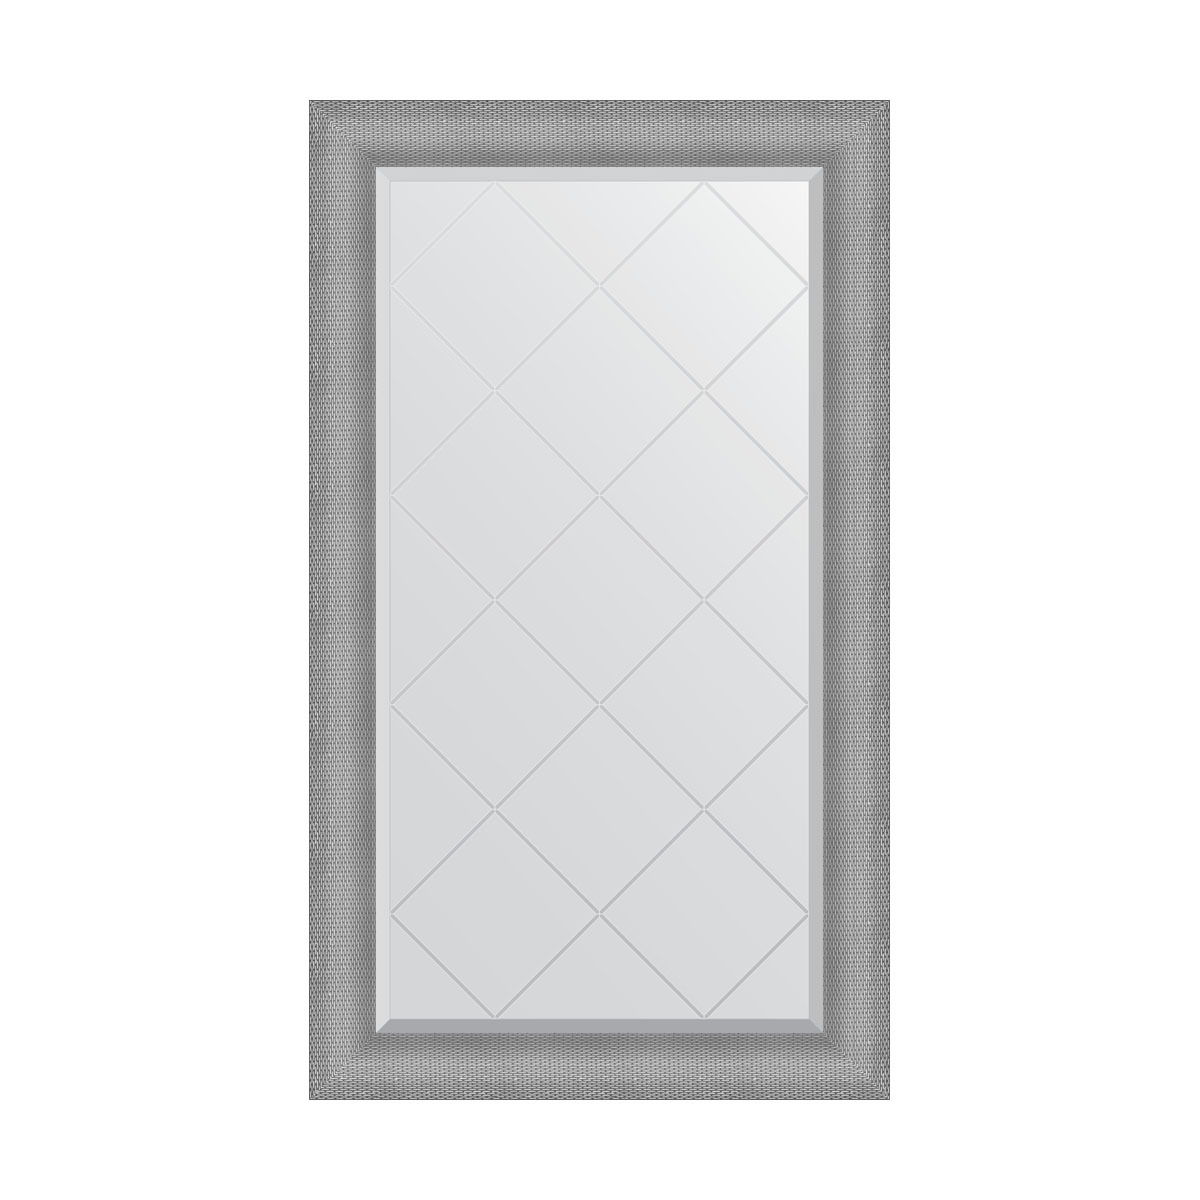 Зеркало с гравировкой в багетной раме Evoform серебряная кольчуга 88 мм 77x132см зеркало с гравировкой в багетной раме evoform серебряная кольчуга 88 мм 77x132см